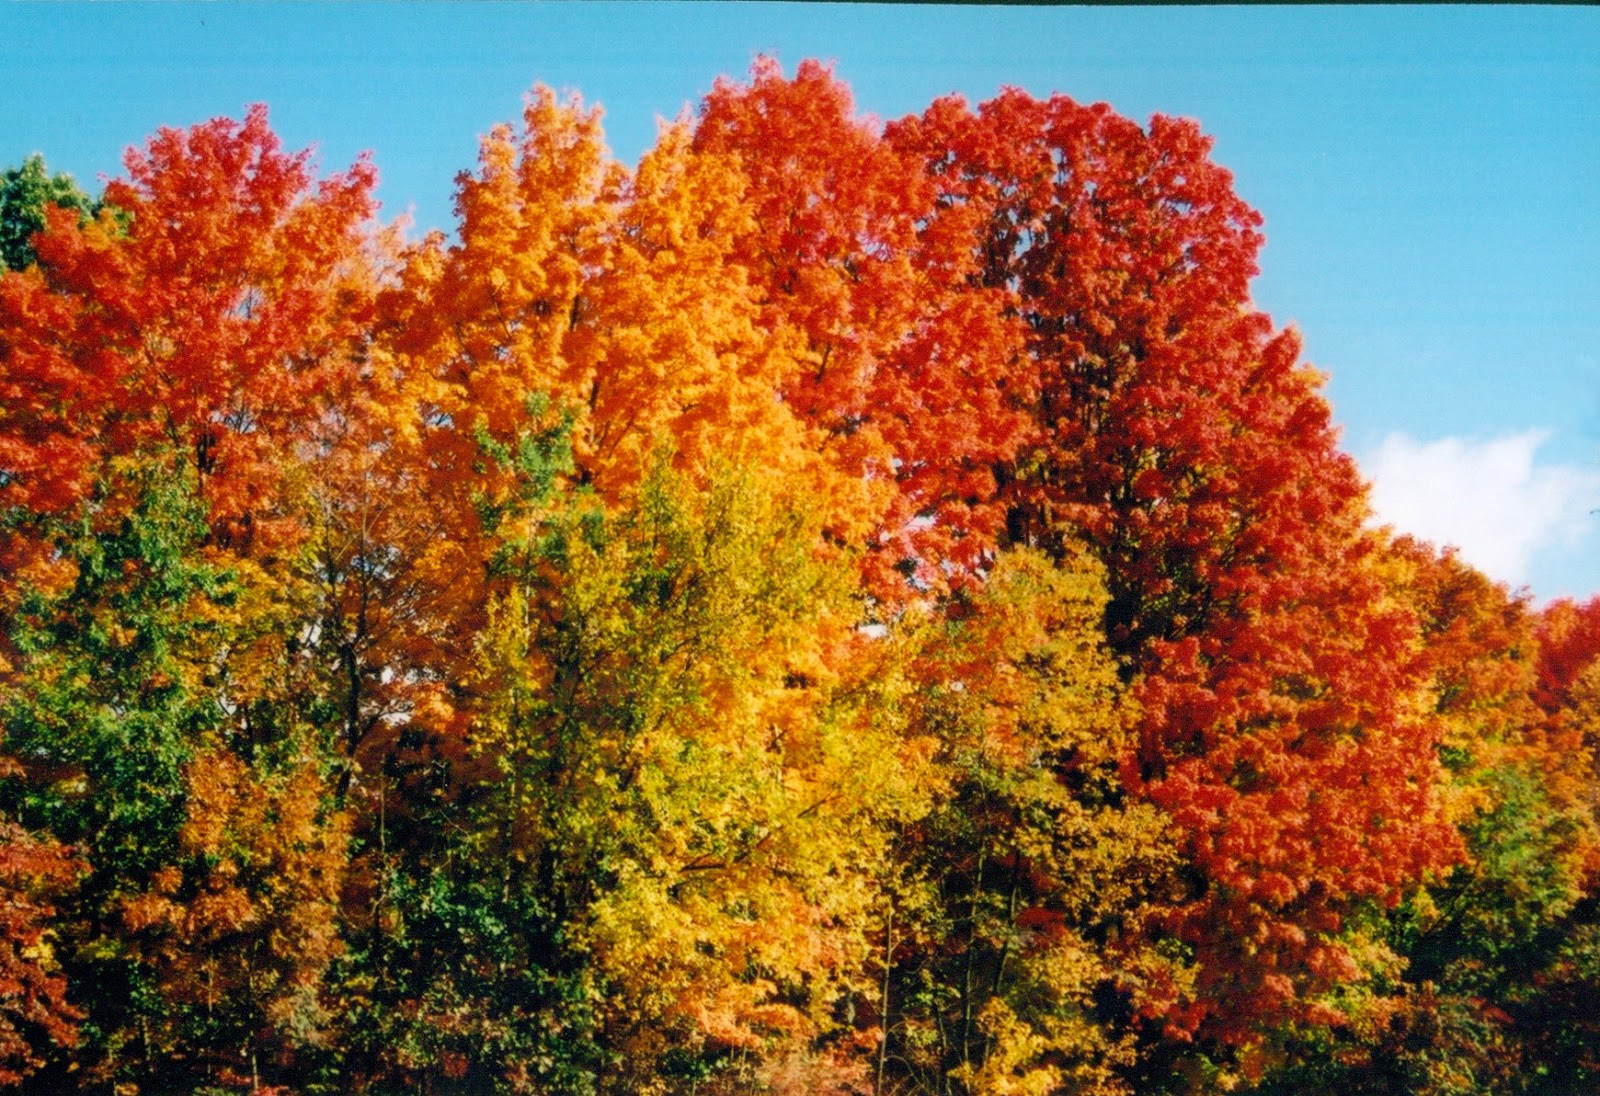 Identifying Fall Foliage